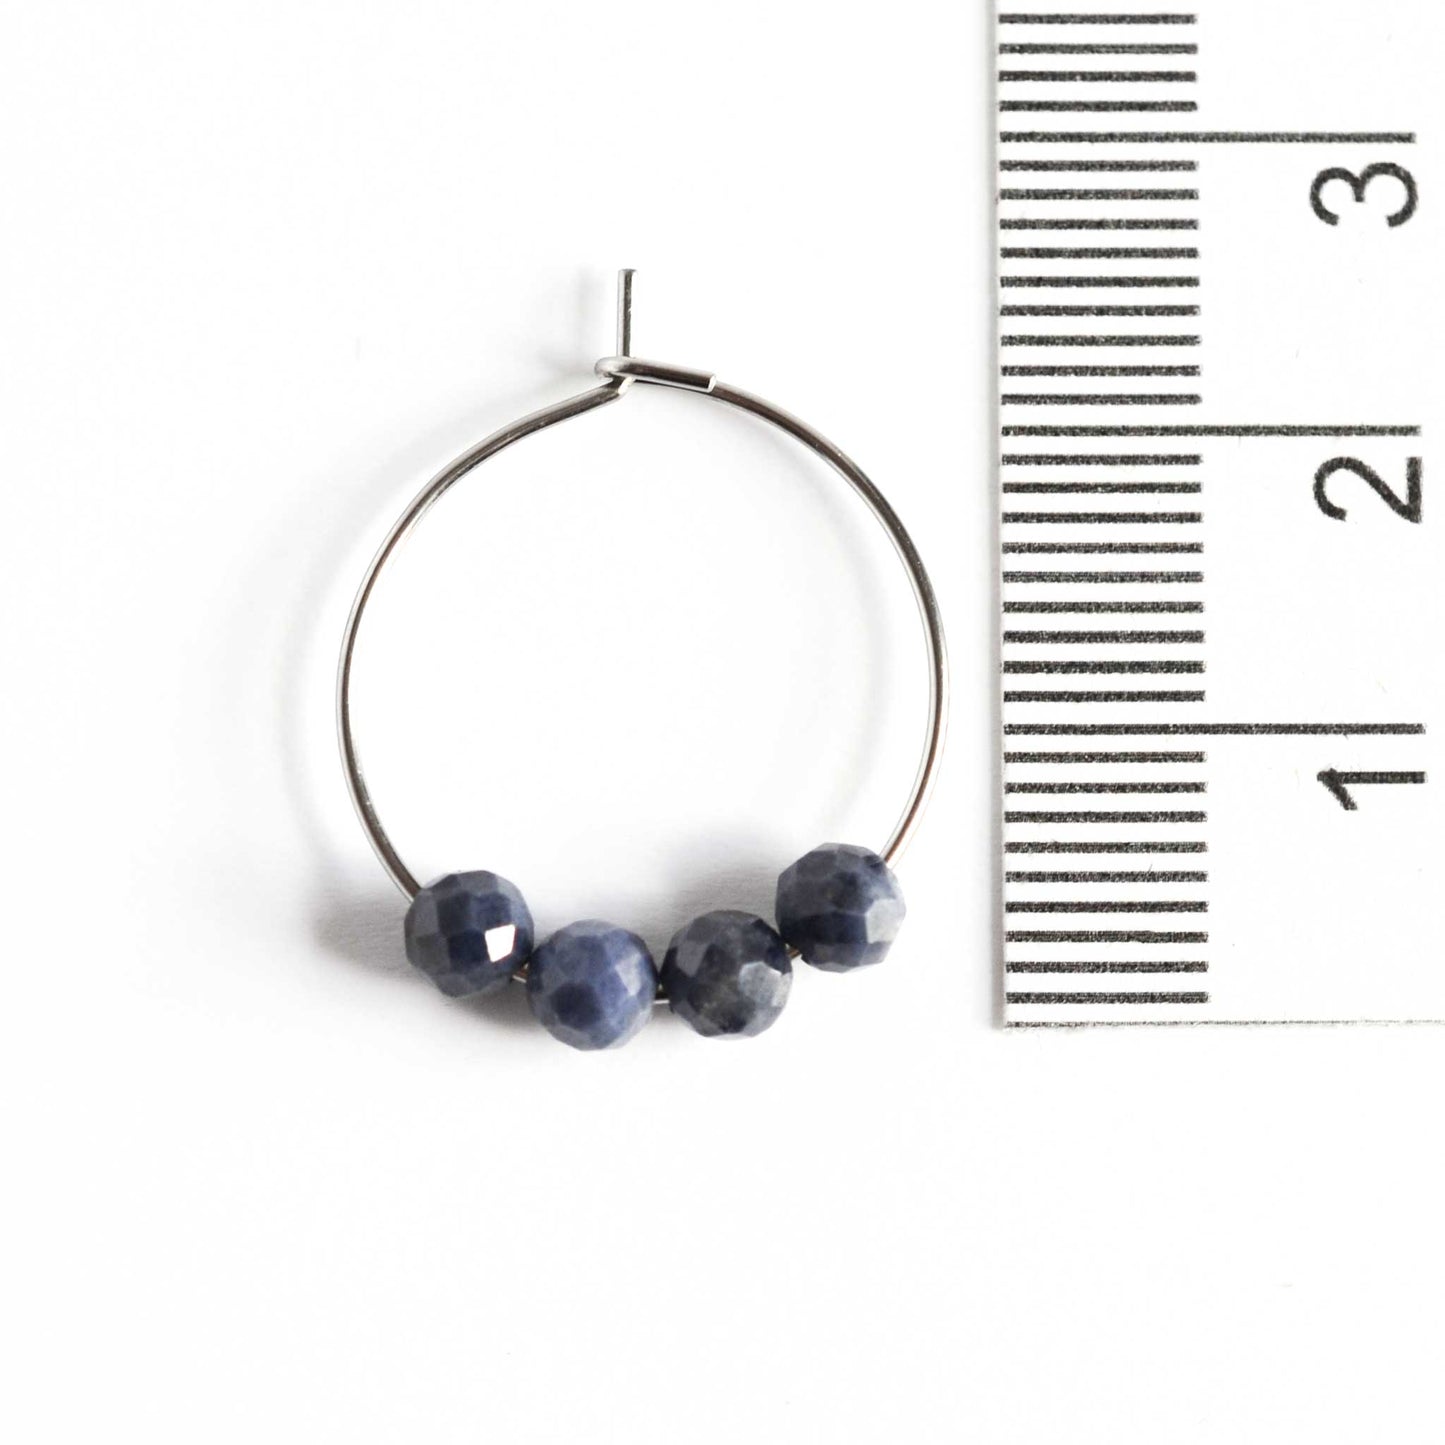 2cm diameter hoop earrings with 4mm Sapphire gemstone beads next to ruler